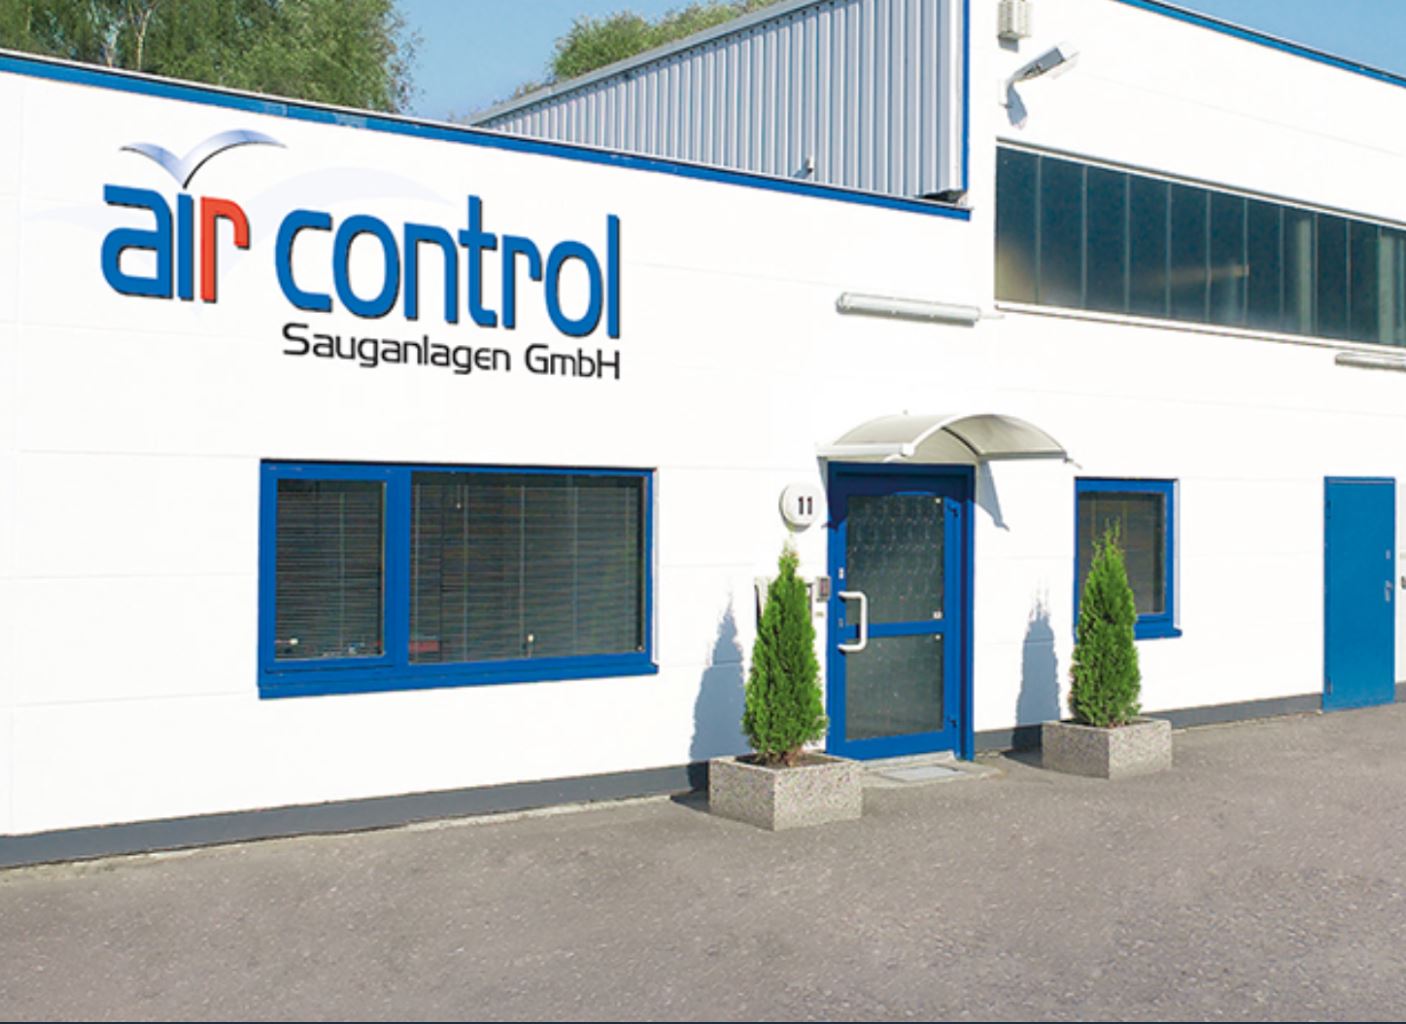 Bild 1 air control Sauganlagen GmbH in Barsbüttel